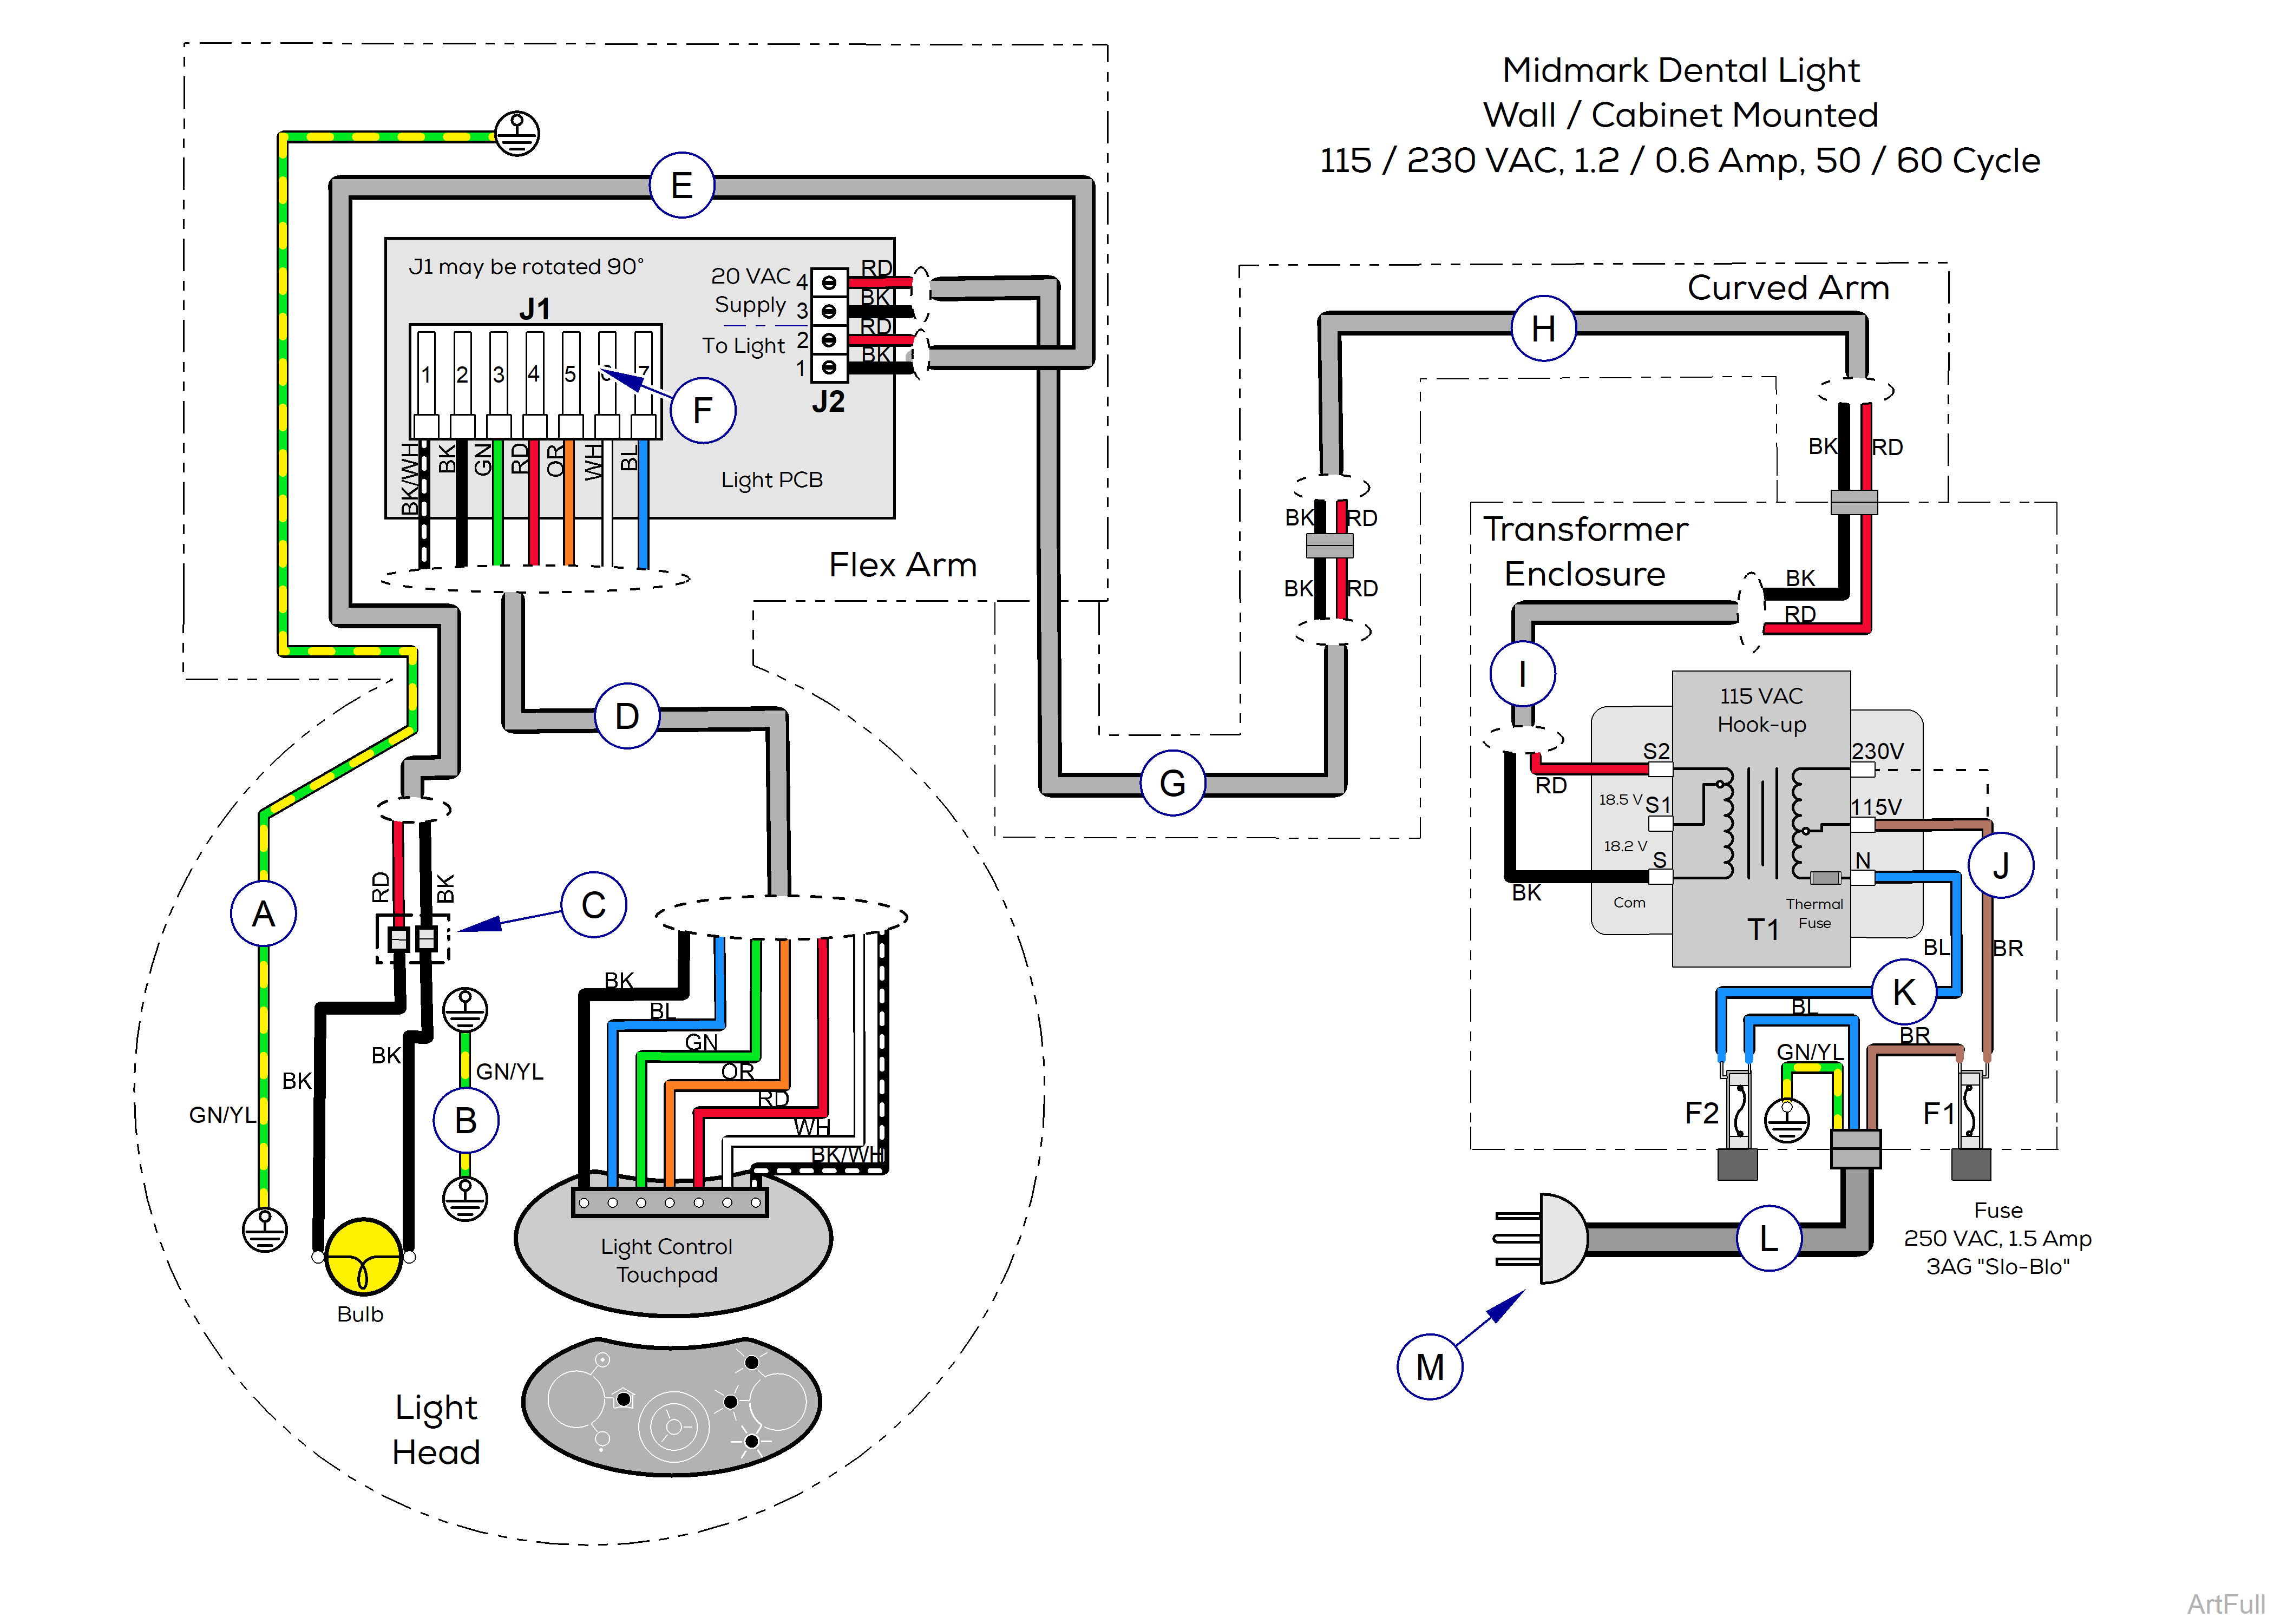 Midmark® Dental Halogen Light Wiring Diagram